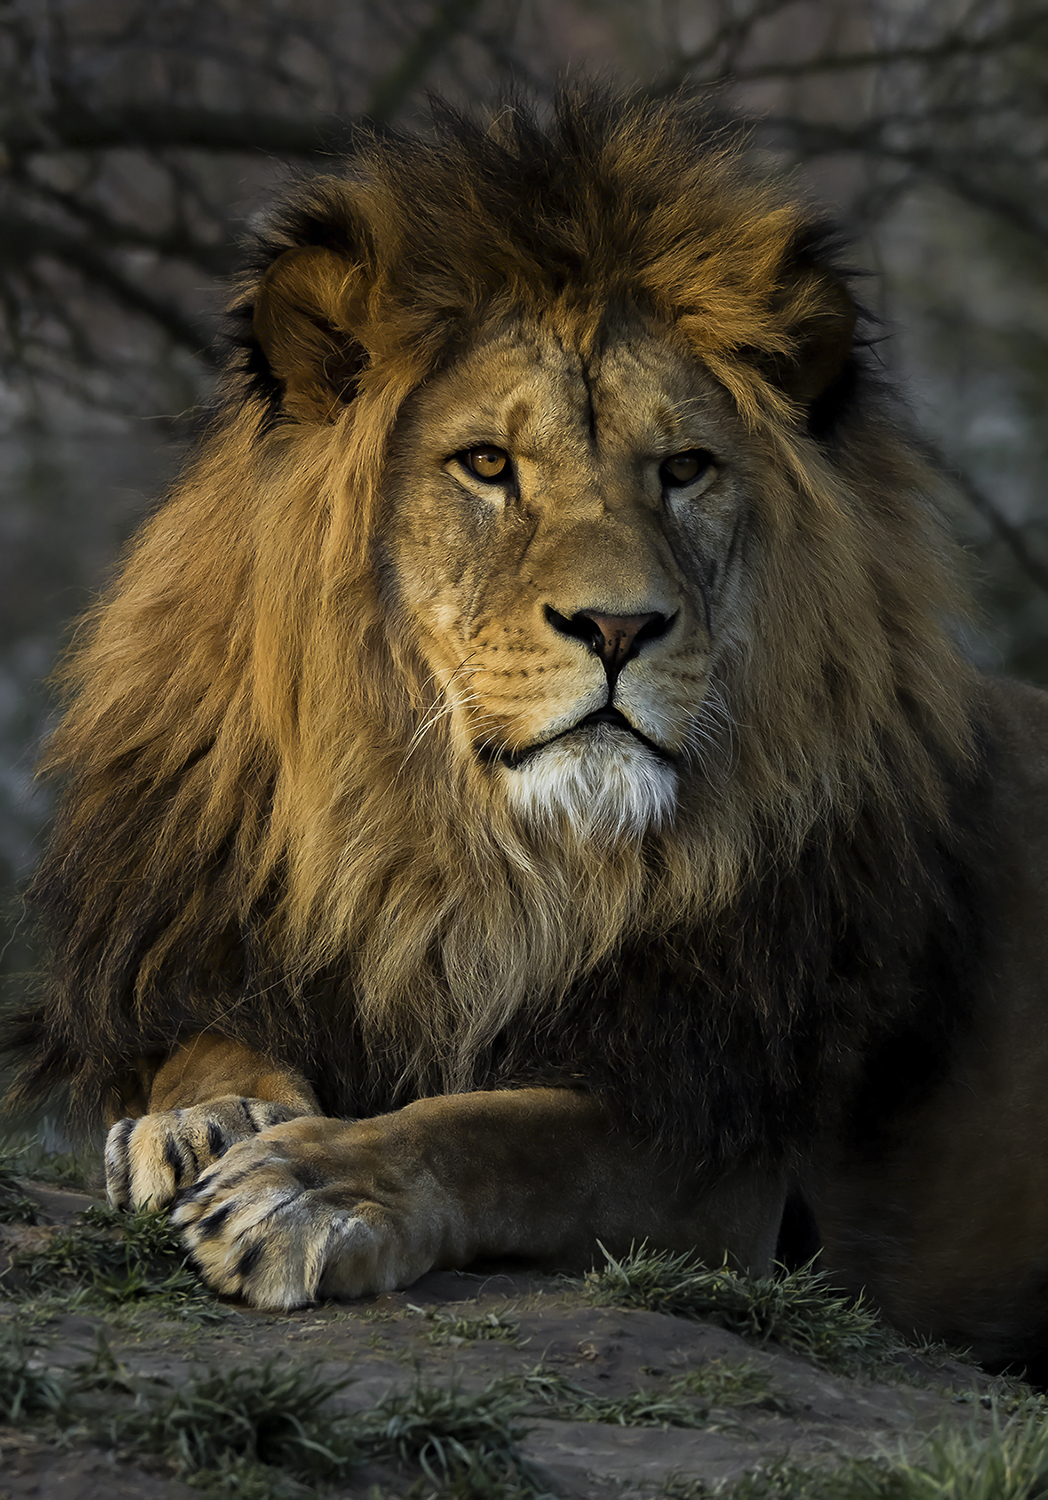 Zamyšlený pohled plzeňského lva při odcházení slunečních paprsků